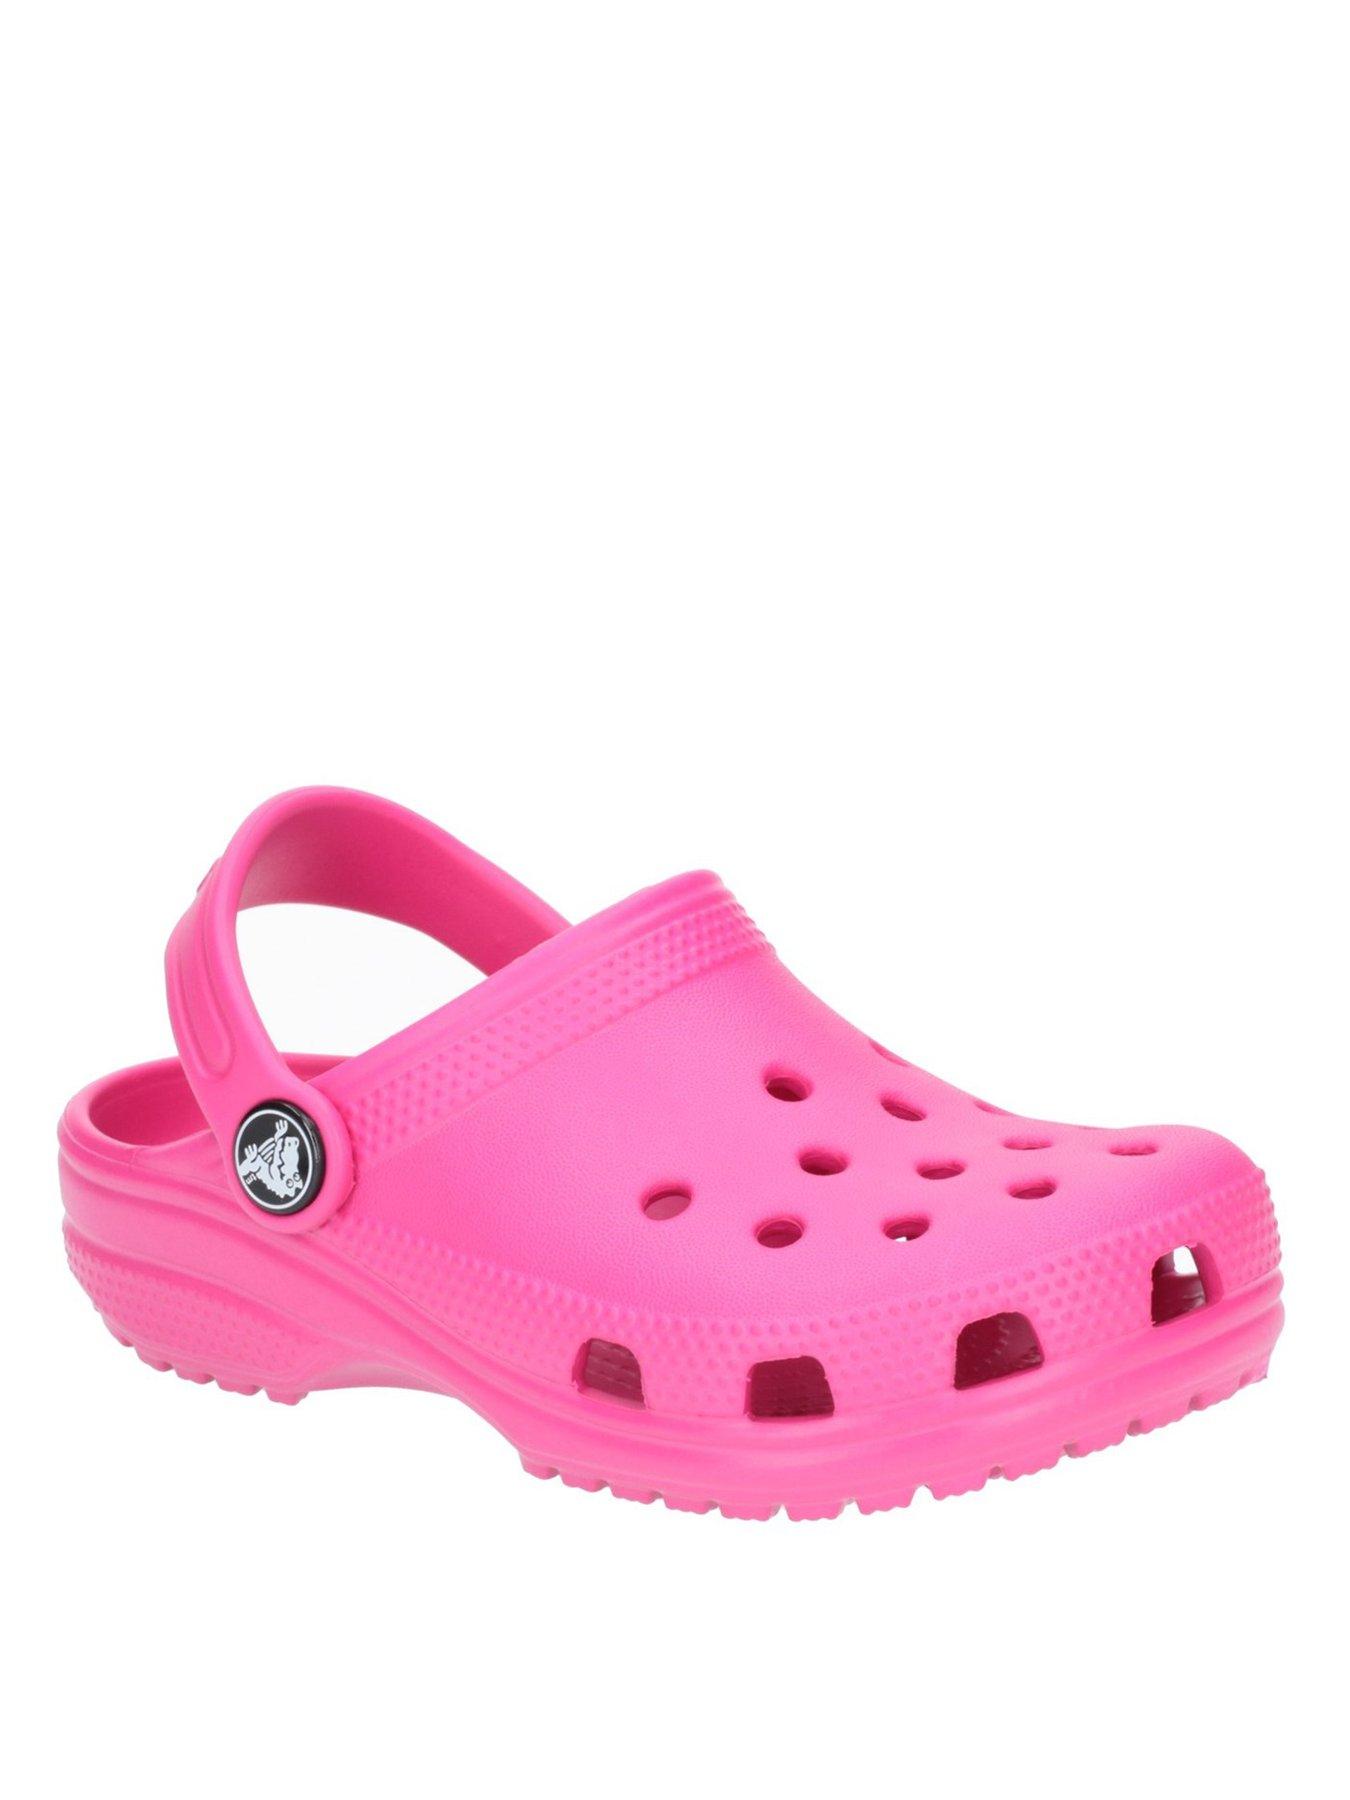 Crocs Girls Classic Clog Slip Ons 